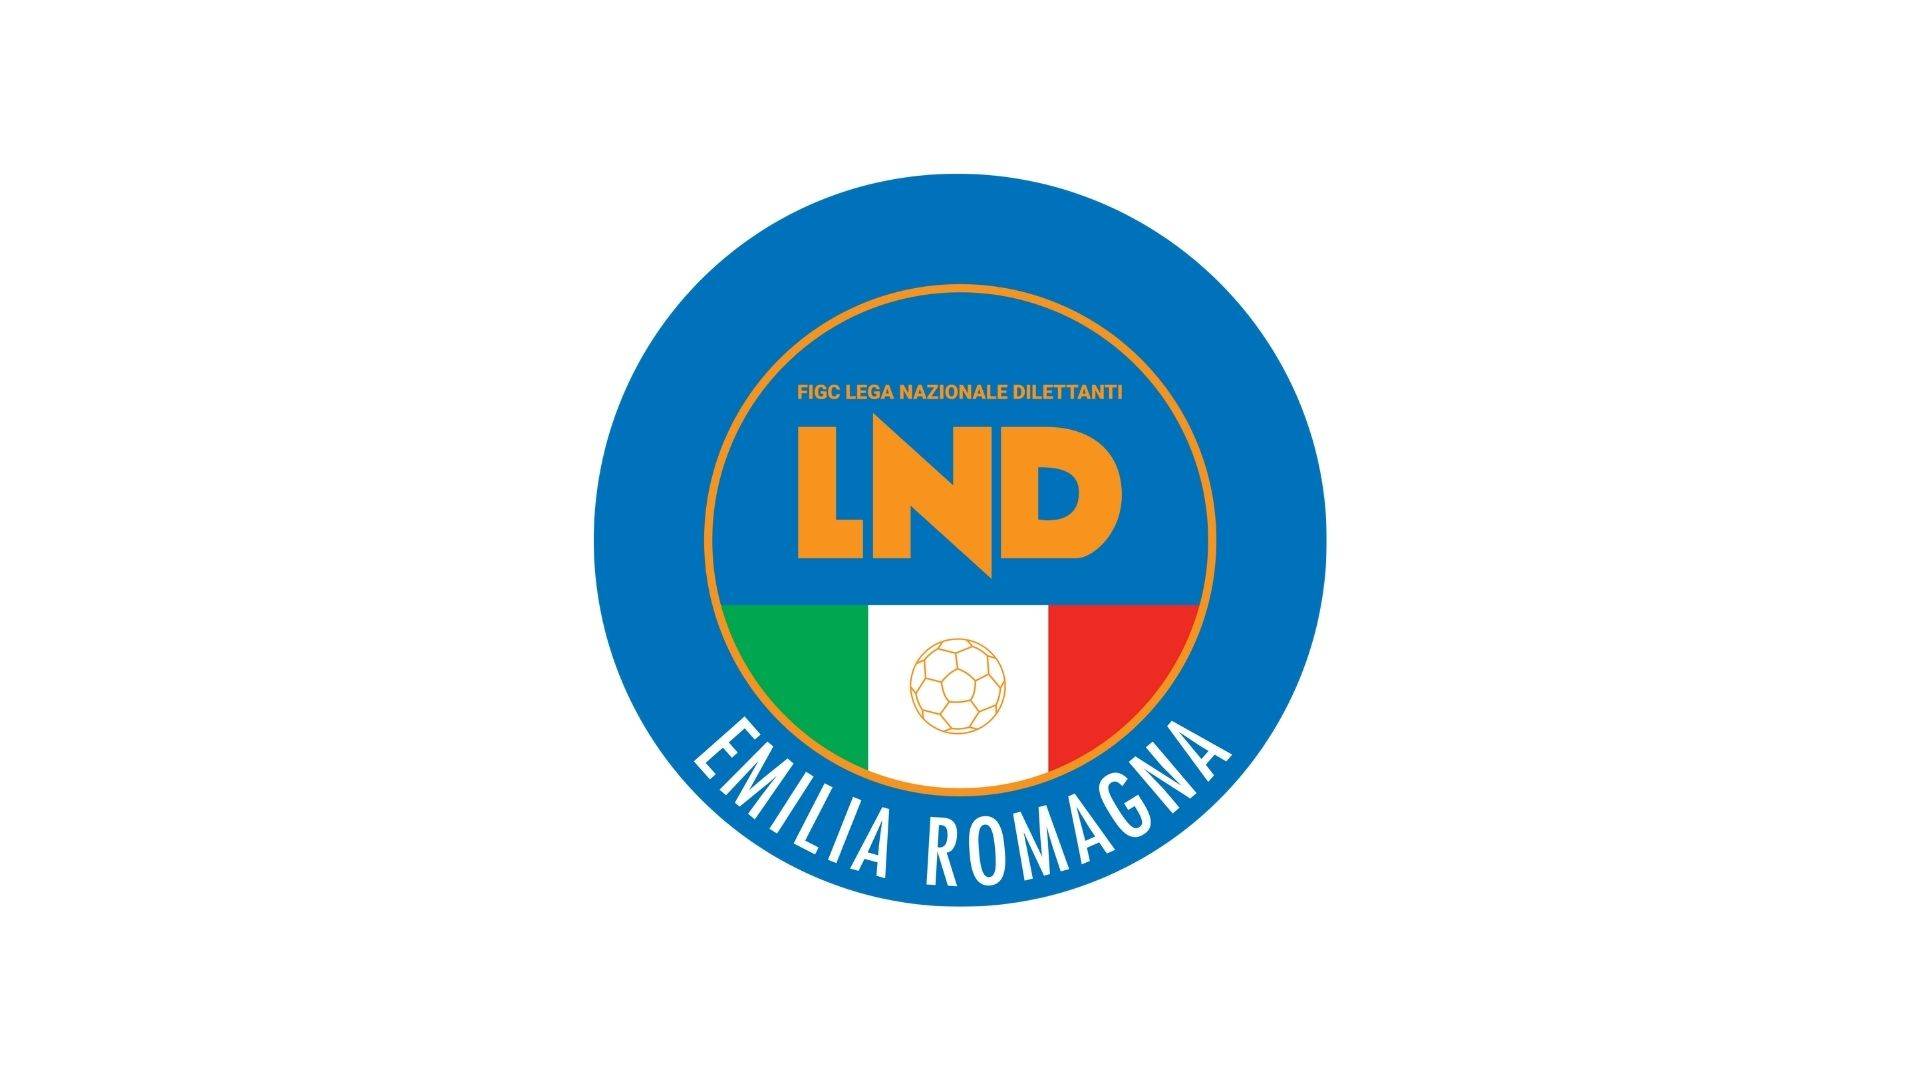 LND Emilia Romagna CRER